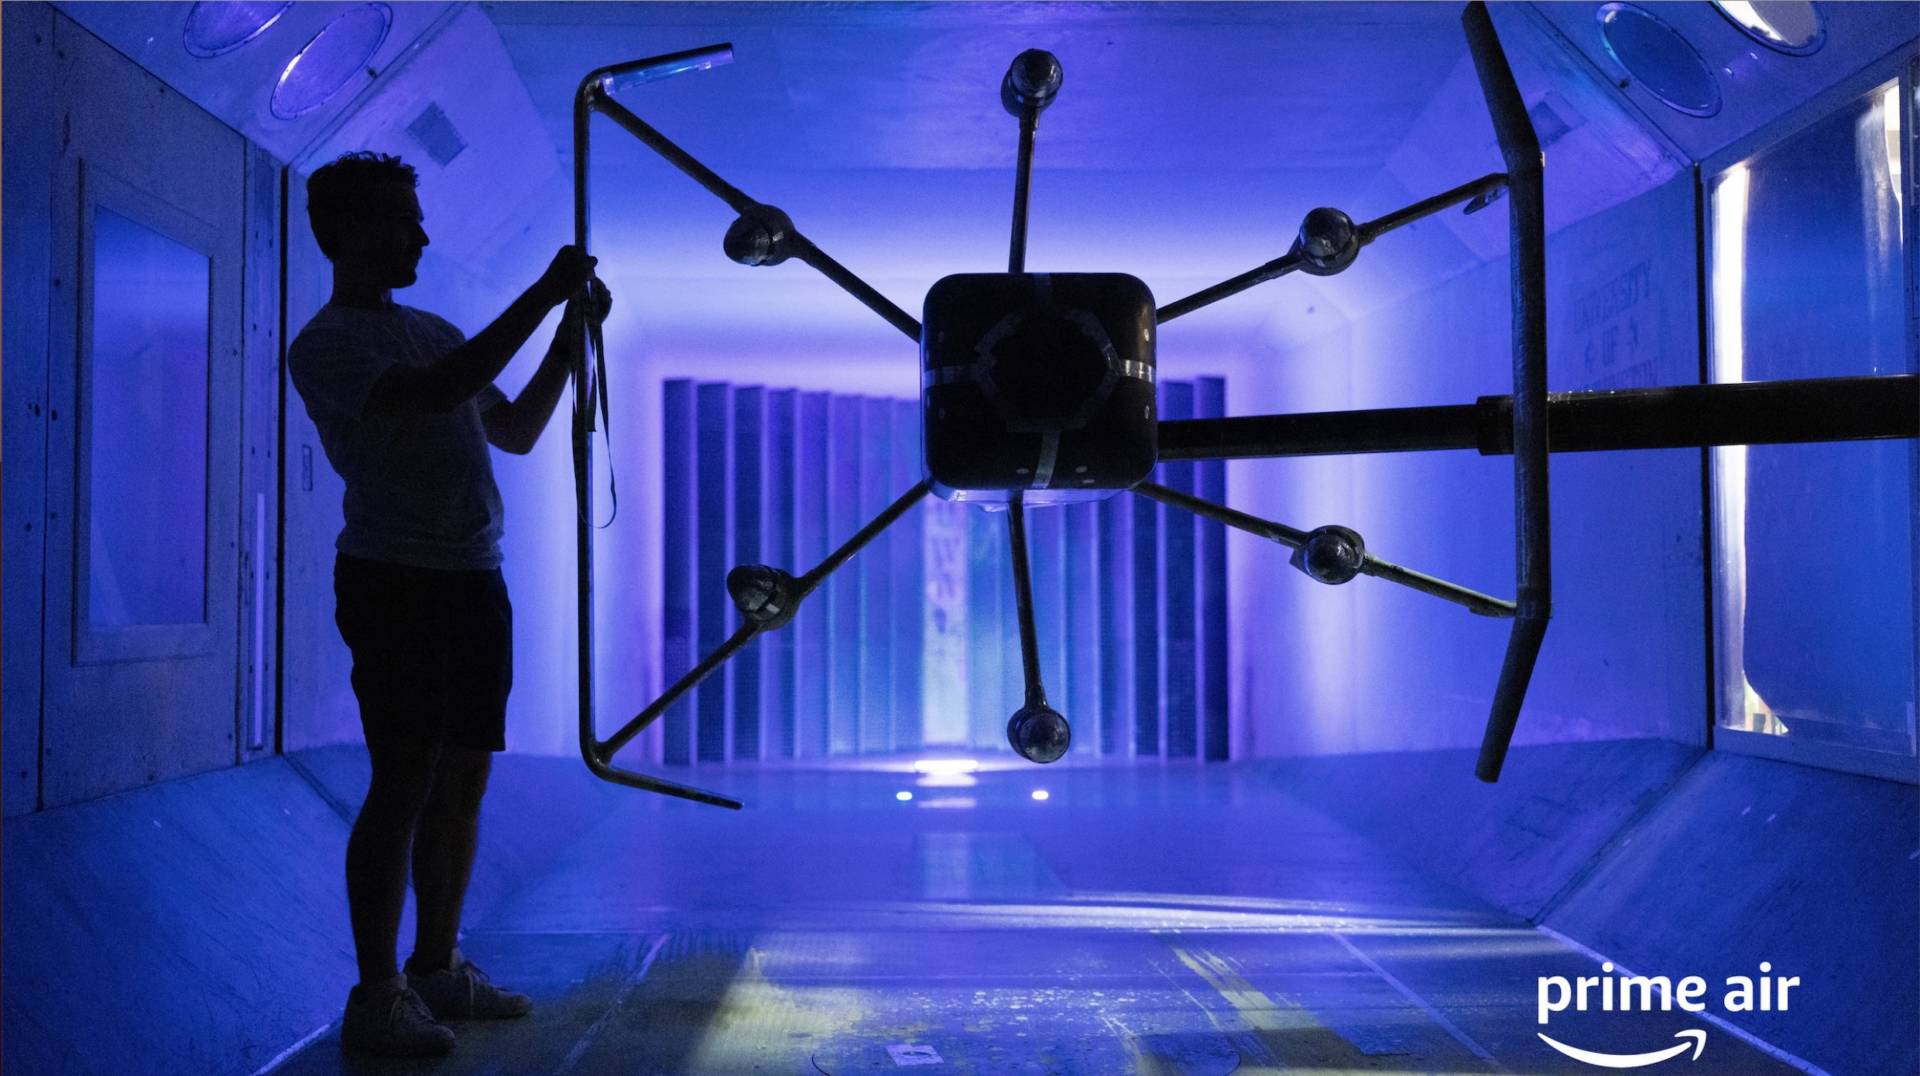 Arriva il drone Prime Air MK30, Amazon consegna con i droni in Italia